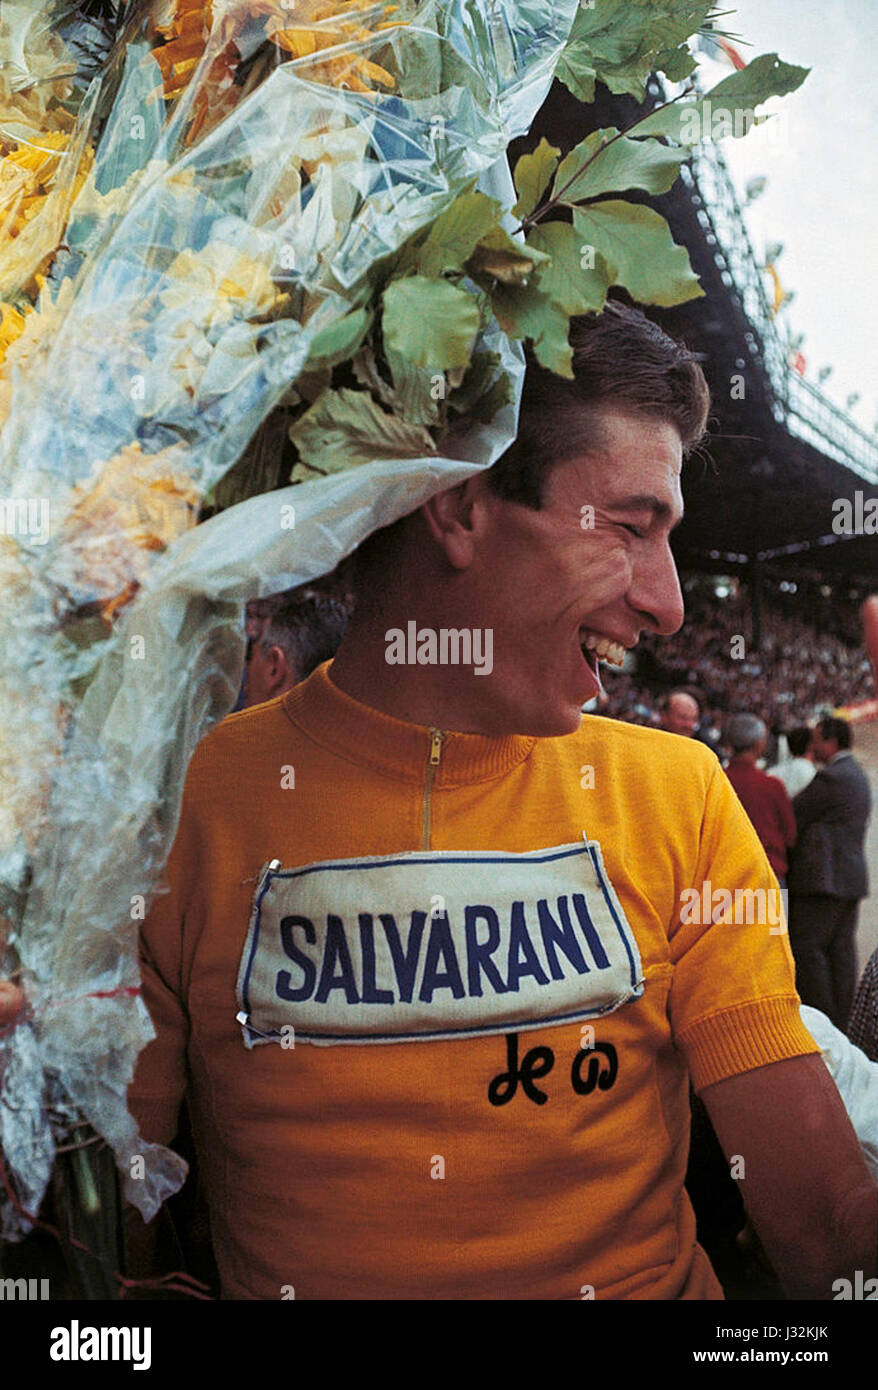 Felice Gimondi, Tour de France 1965 Maillot jaune Banque D'Images